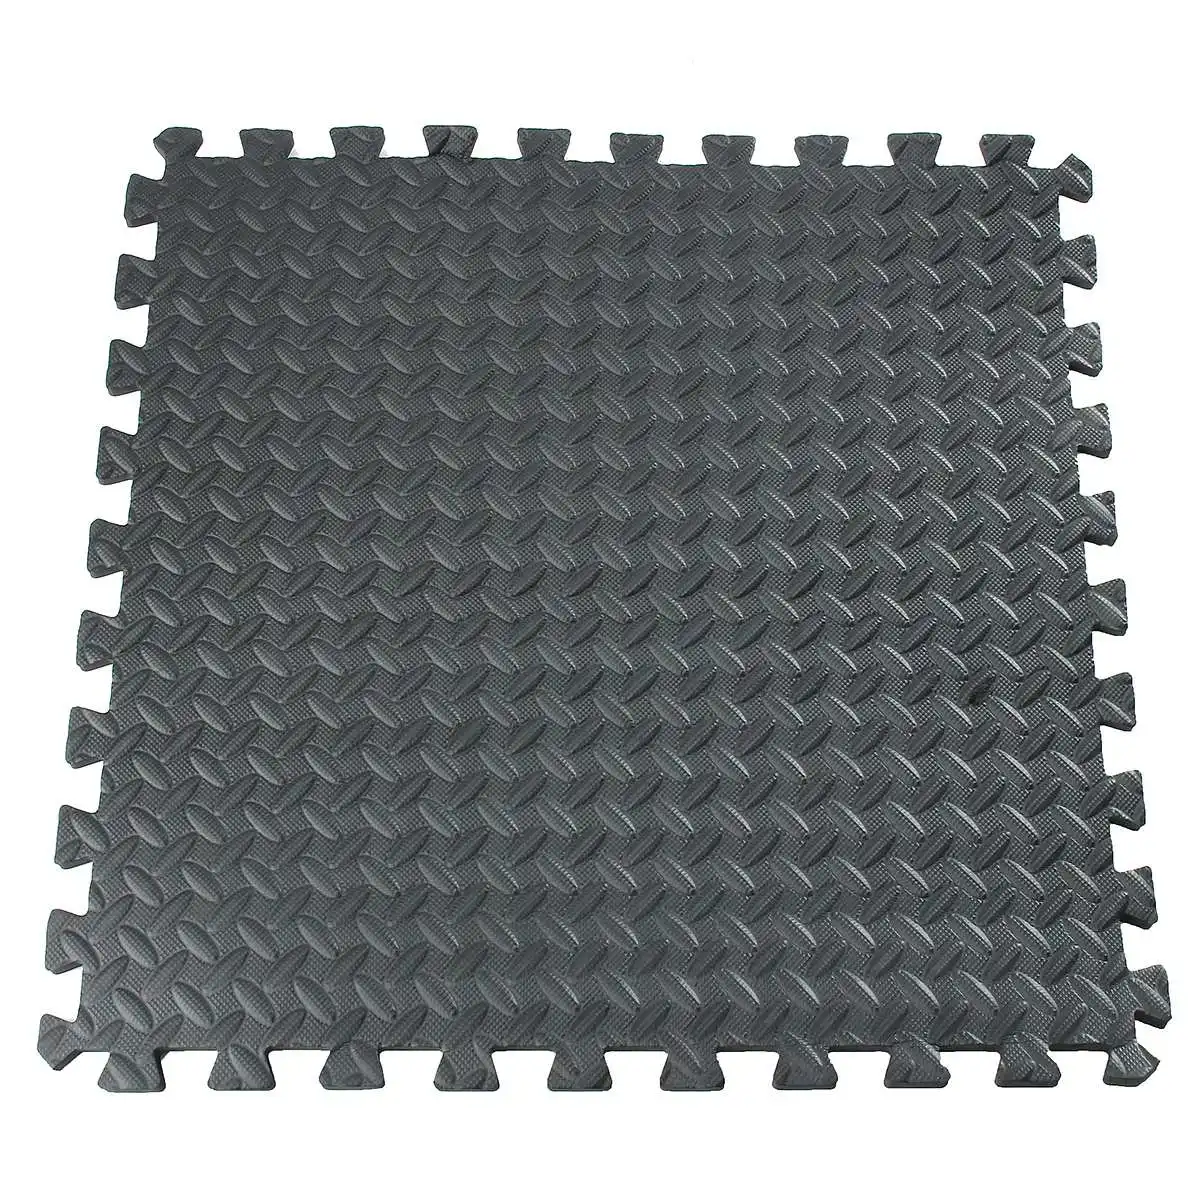 Высокая плотность EVA пены пол блокировка плитка коврик прочный показать пол тренажерный зал упражнения игровая комната Йога коврик черный 61x61 см